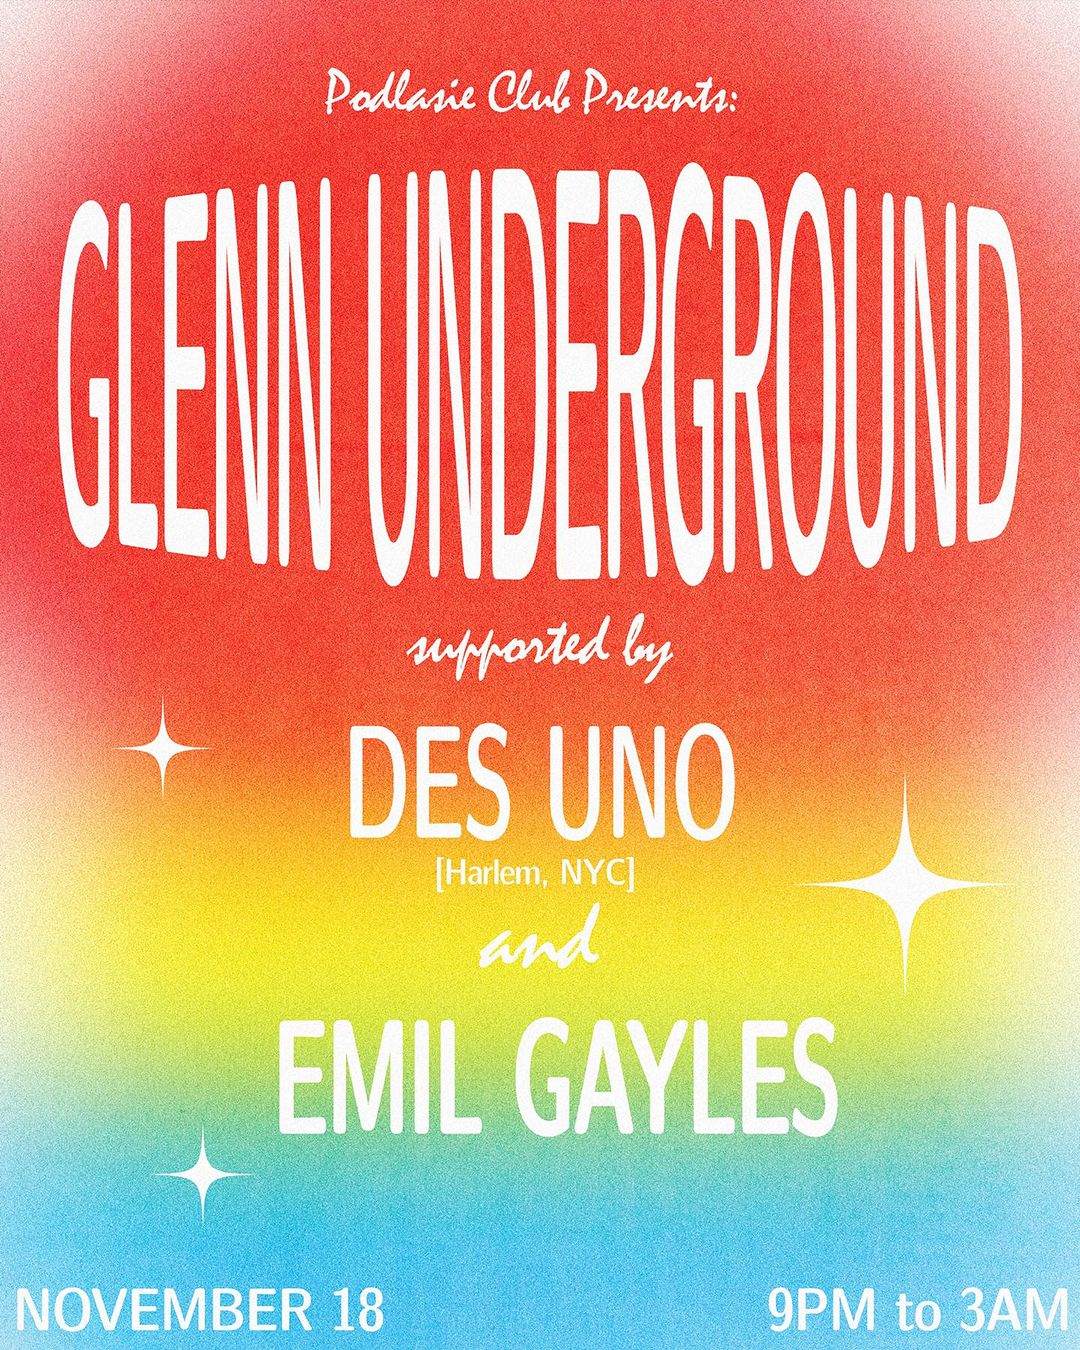 Glenn Underground, Des Uno, Emil Gayles - フライヤー表